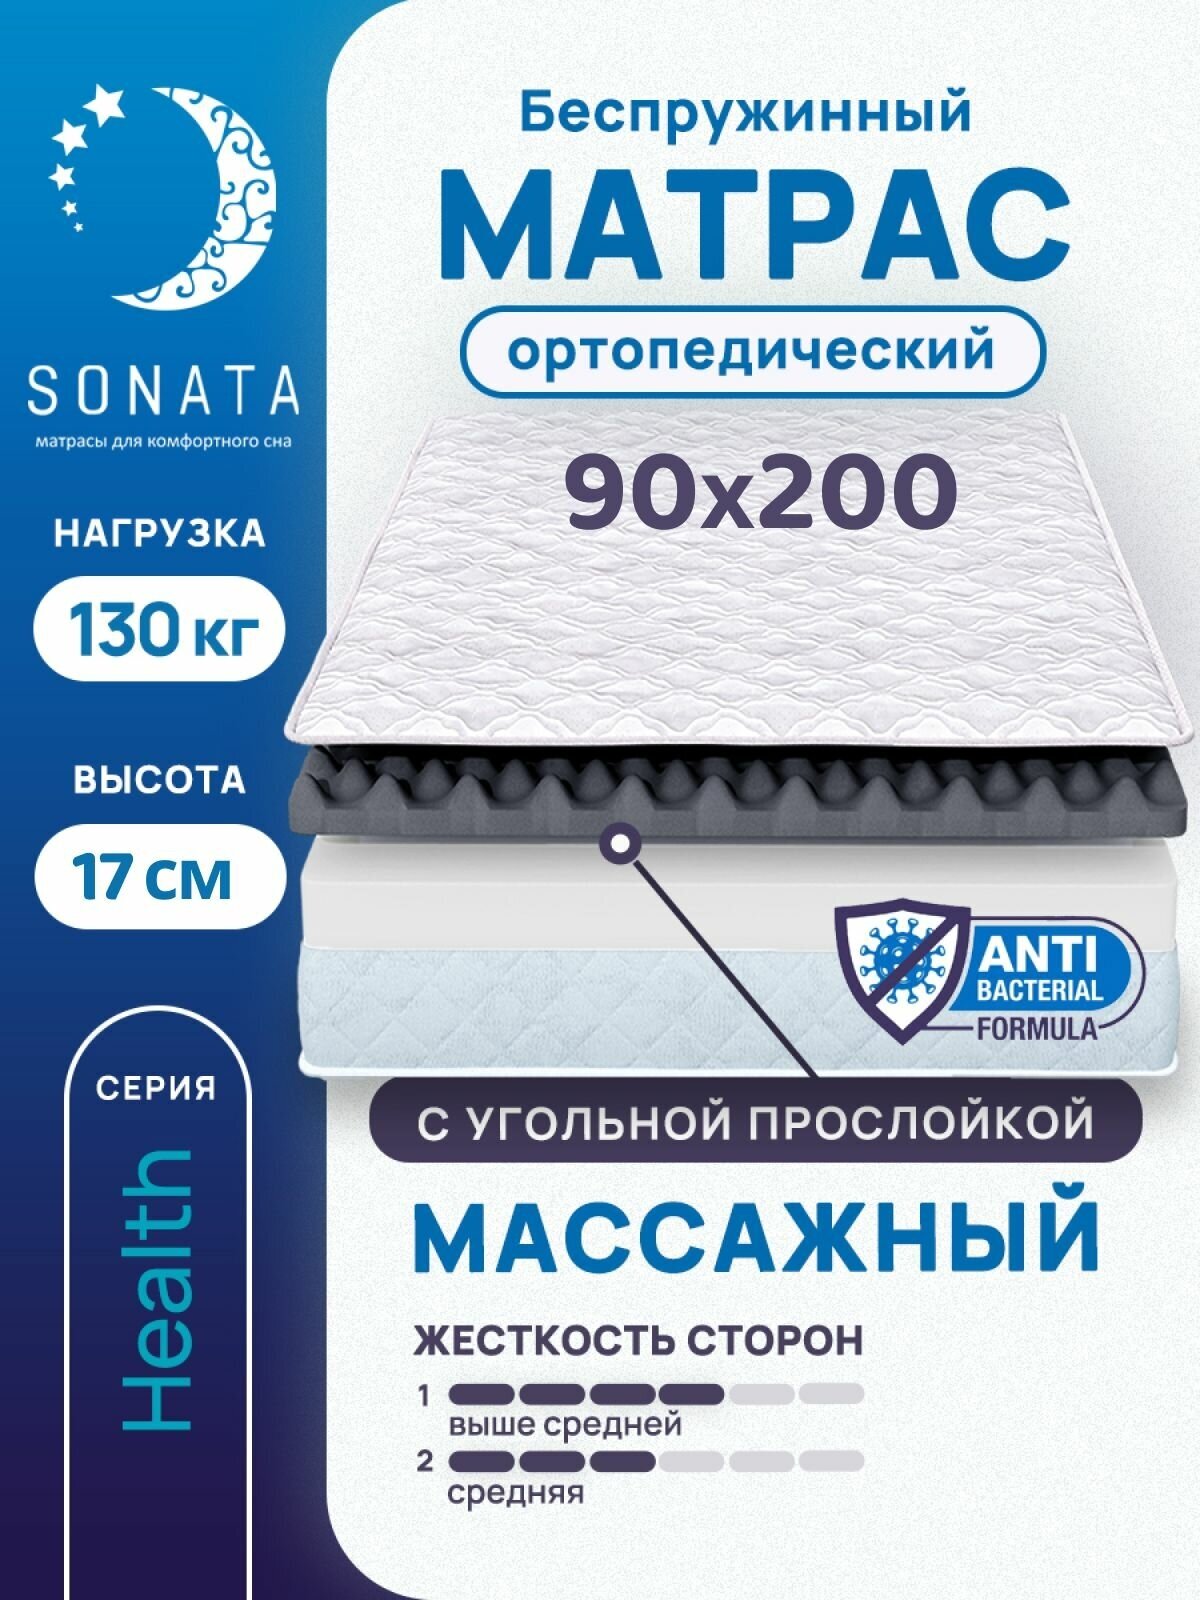 Матрас 90х200 см SONATA, беспружинный, односпальный, матрац для кровати, высота 17 см, с массажным эффектом